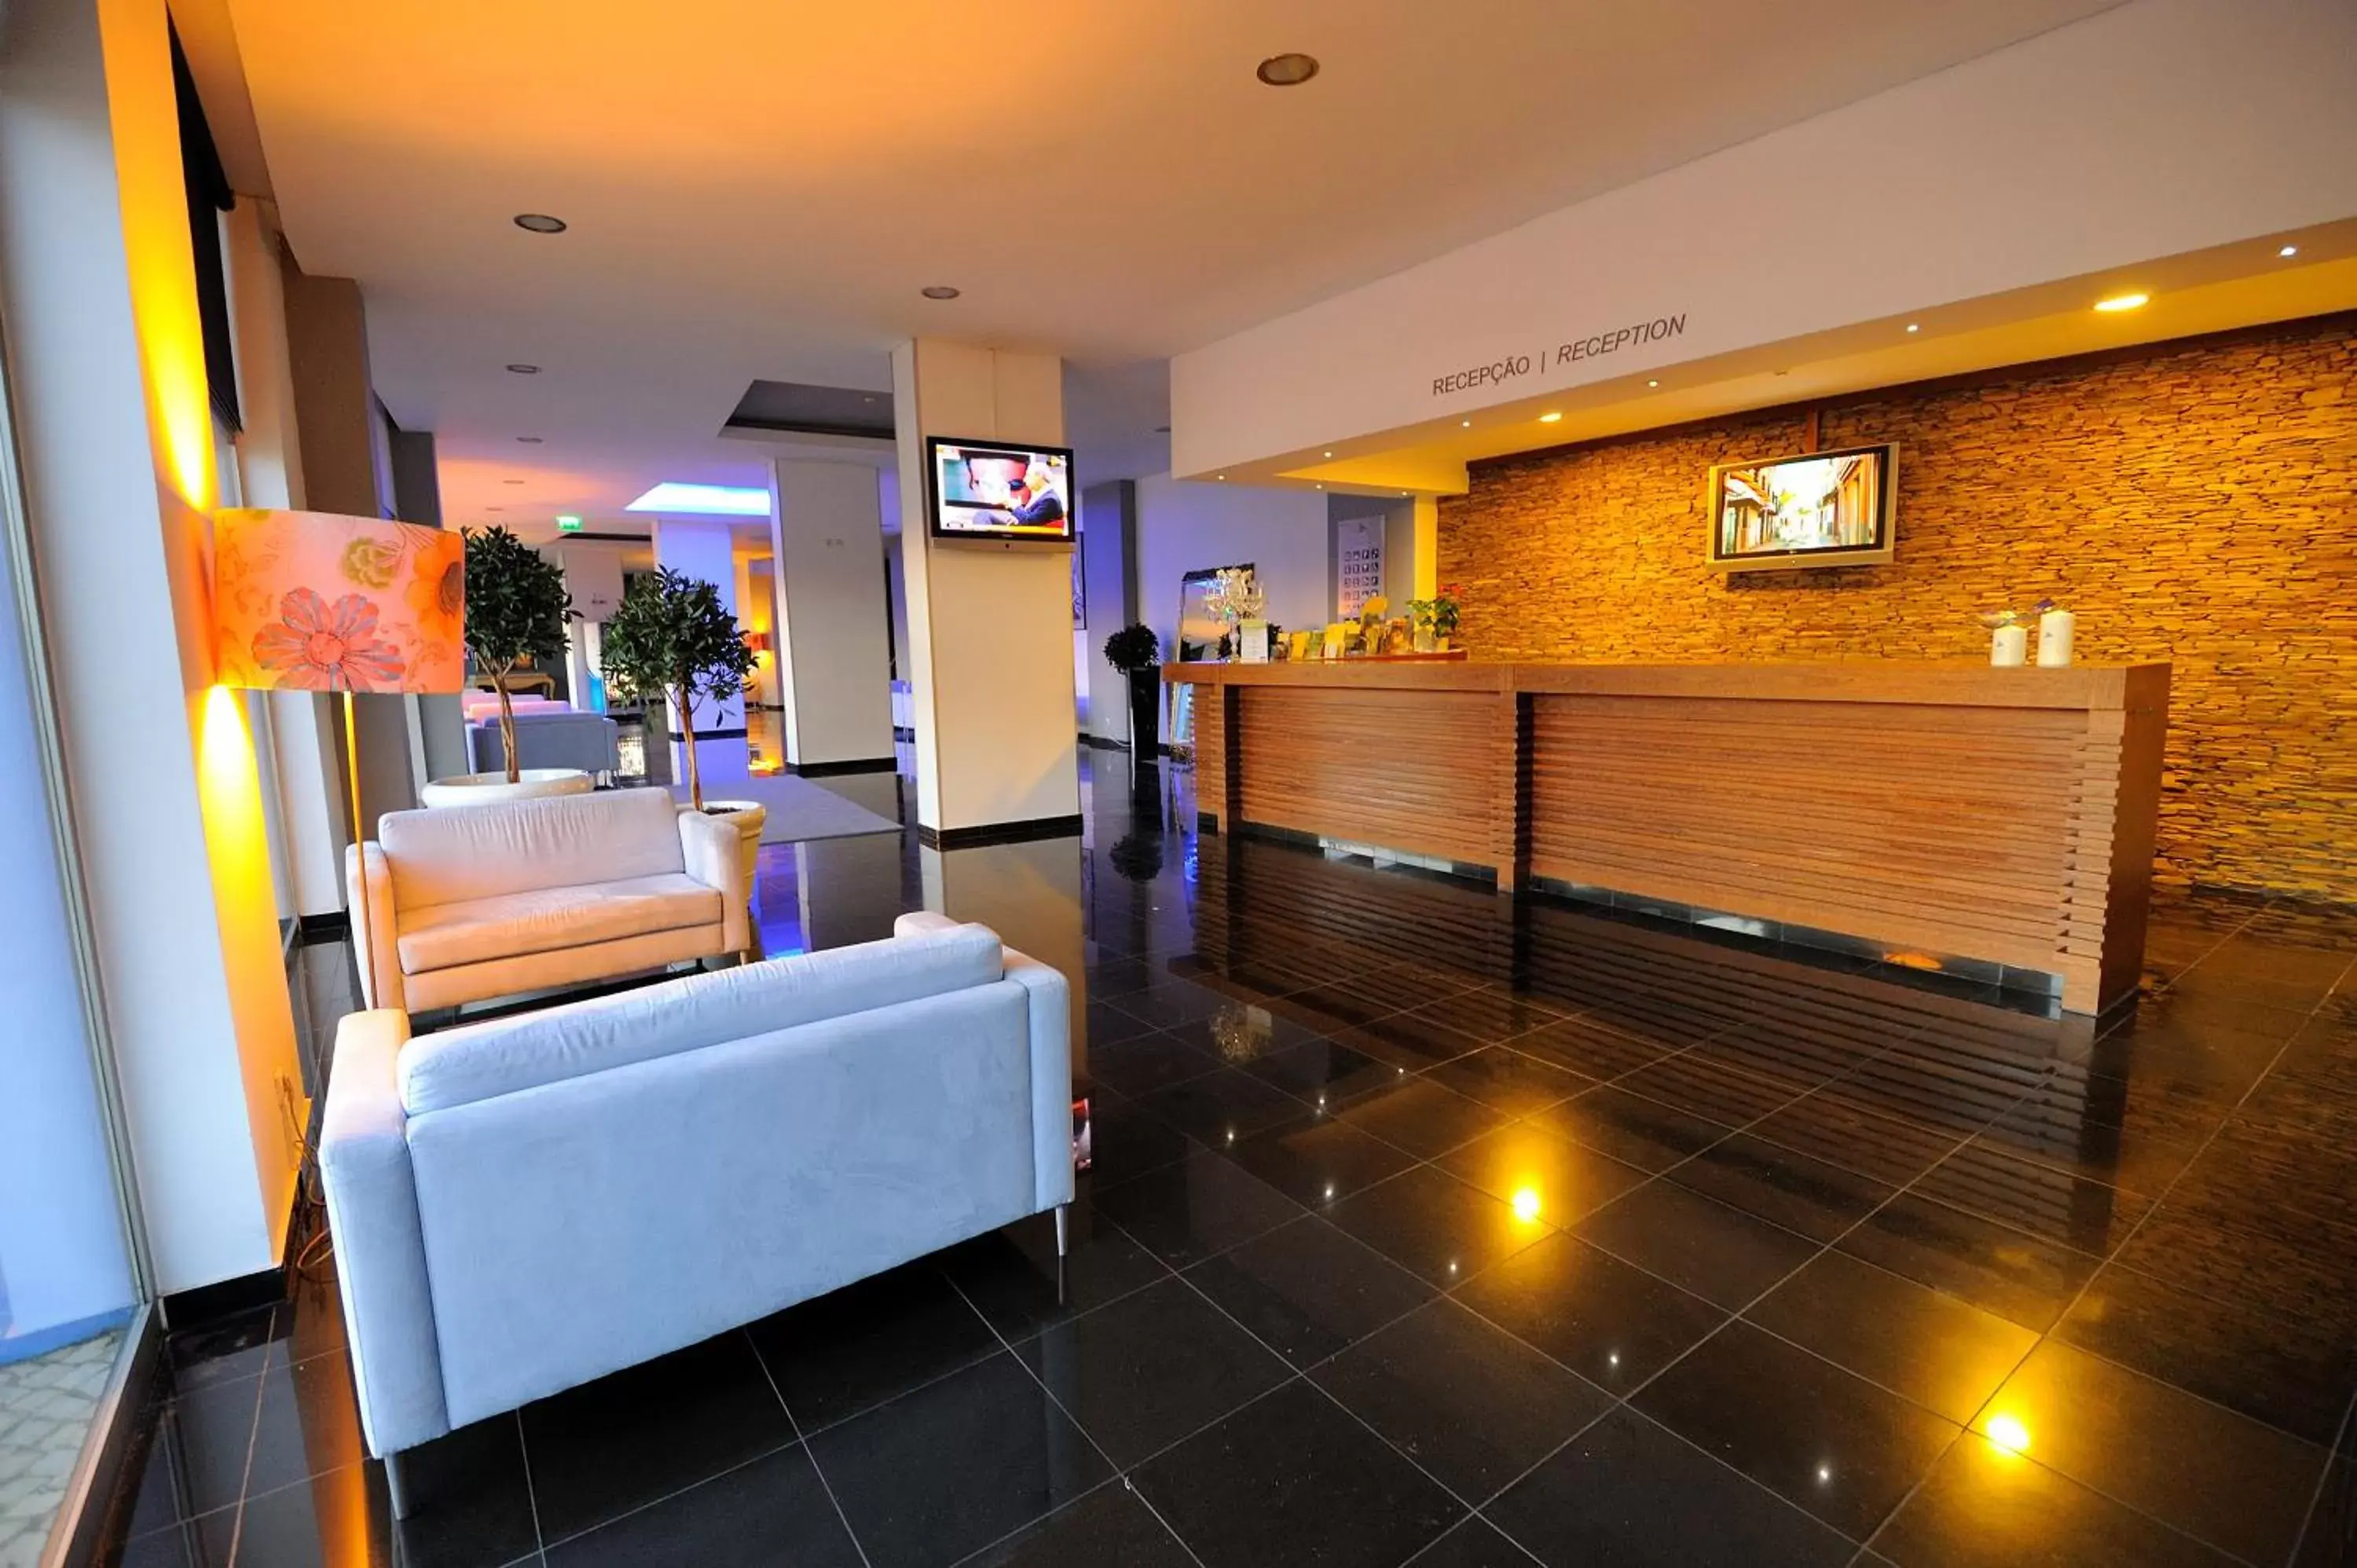 Lobby or reception, Lobby/Reception in Oceano Atlantico Apartamentos Turisticos